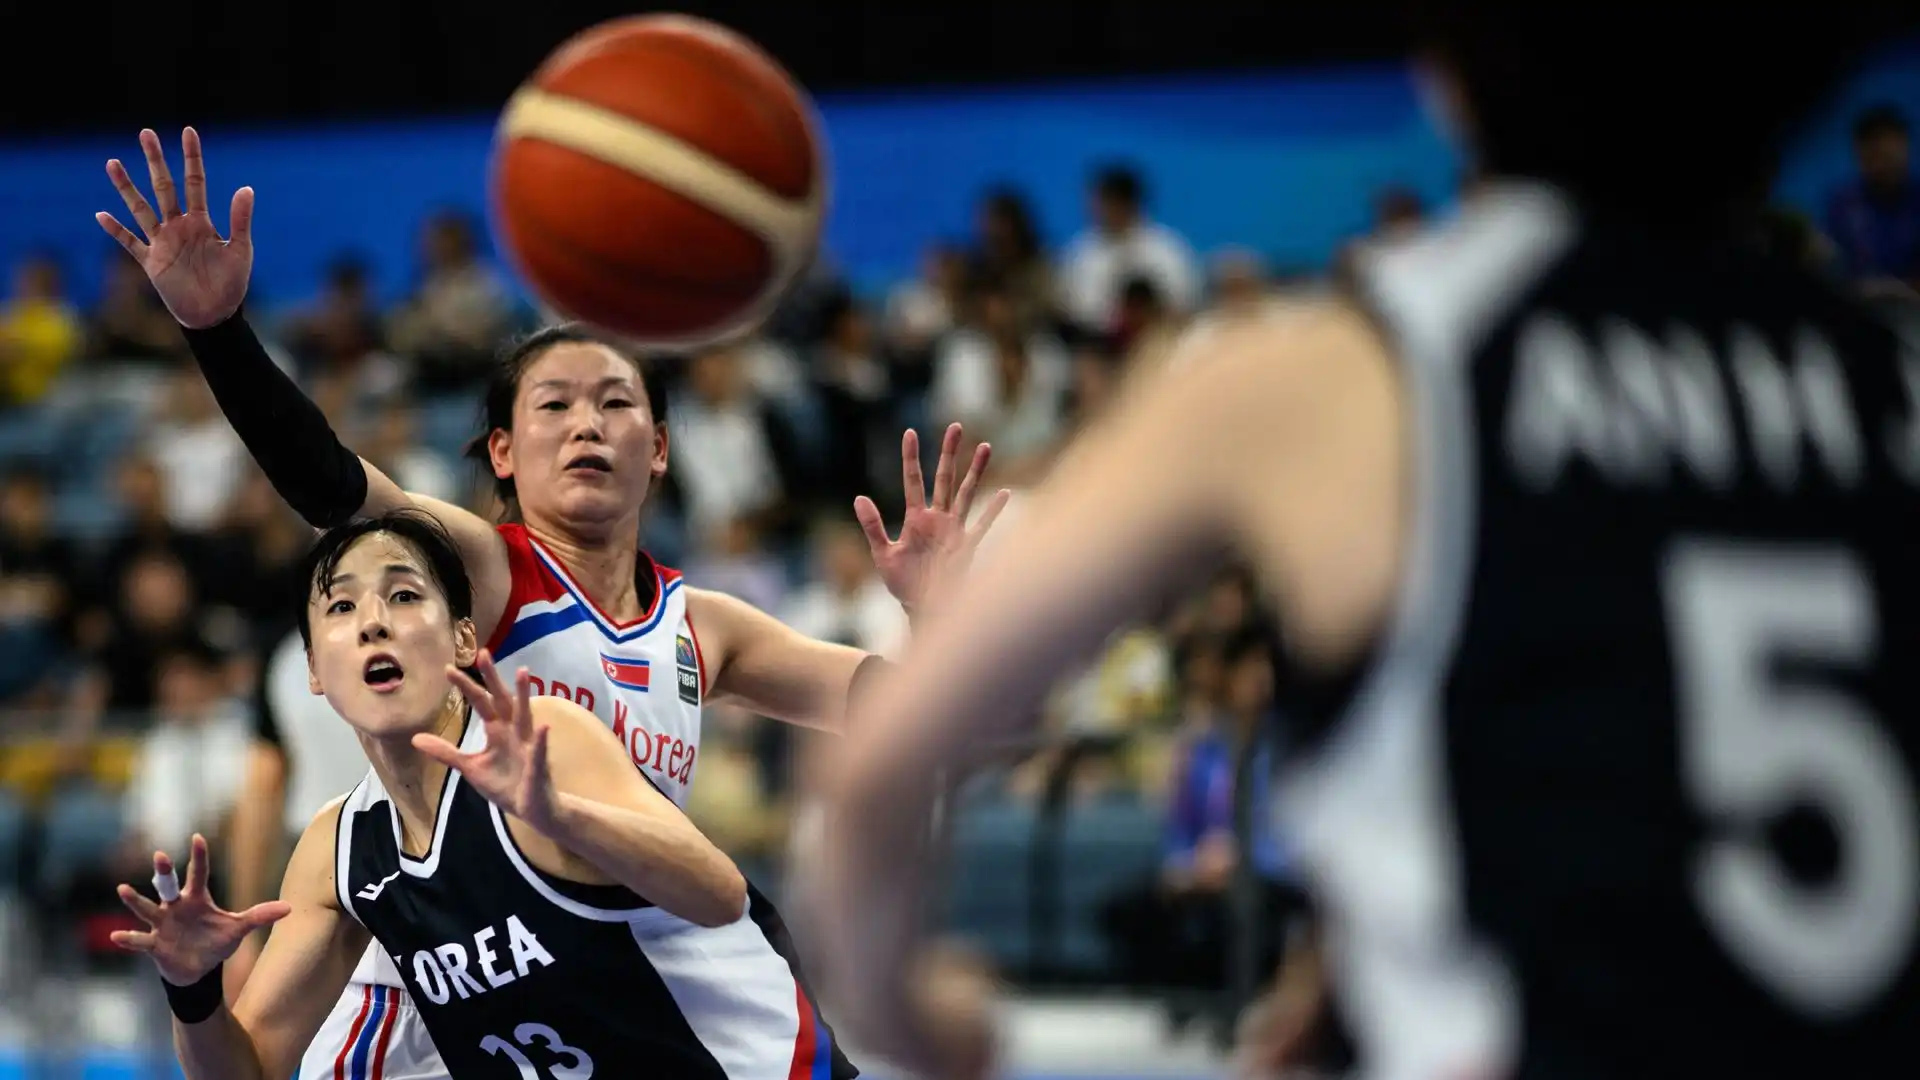 La partita di basket femminile era valida per i Giochi Asiatici